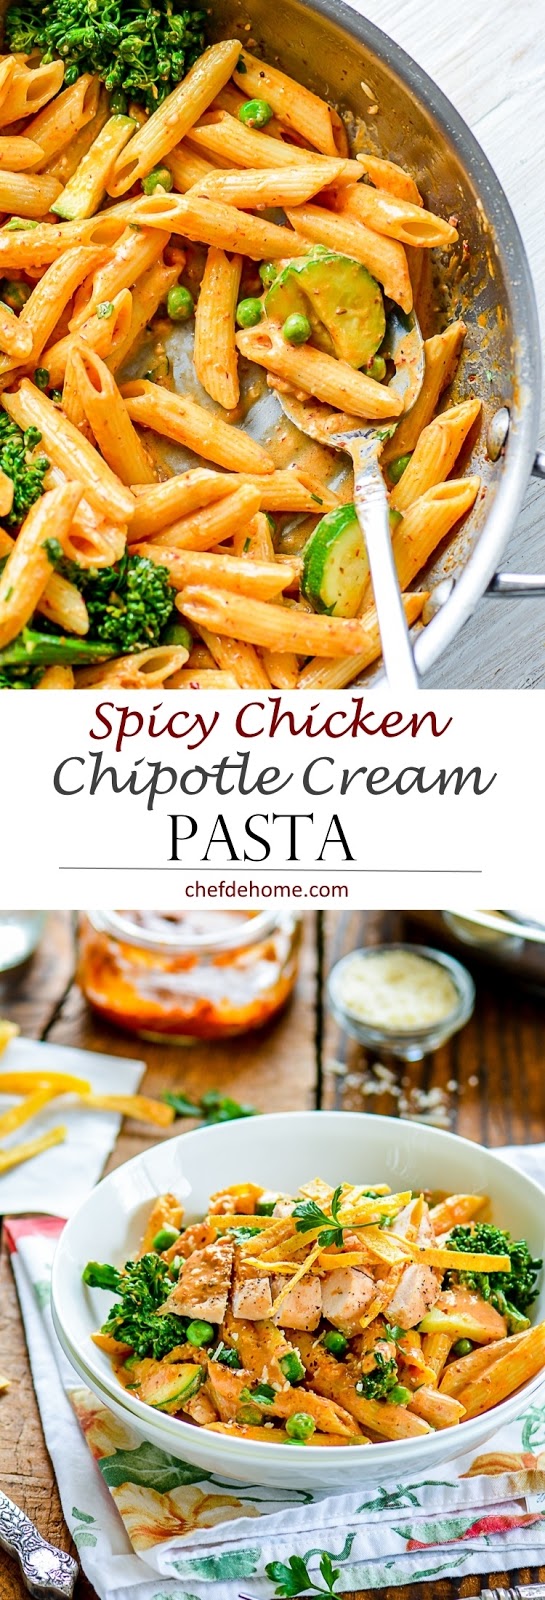 Spicy Chicken Chipotle Cream Sauce Pasta